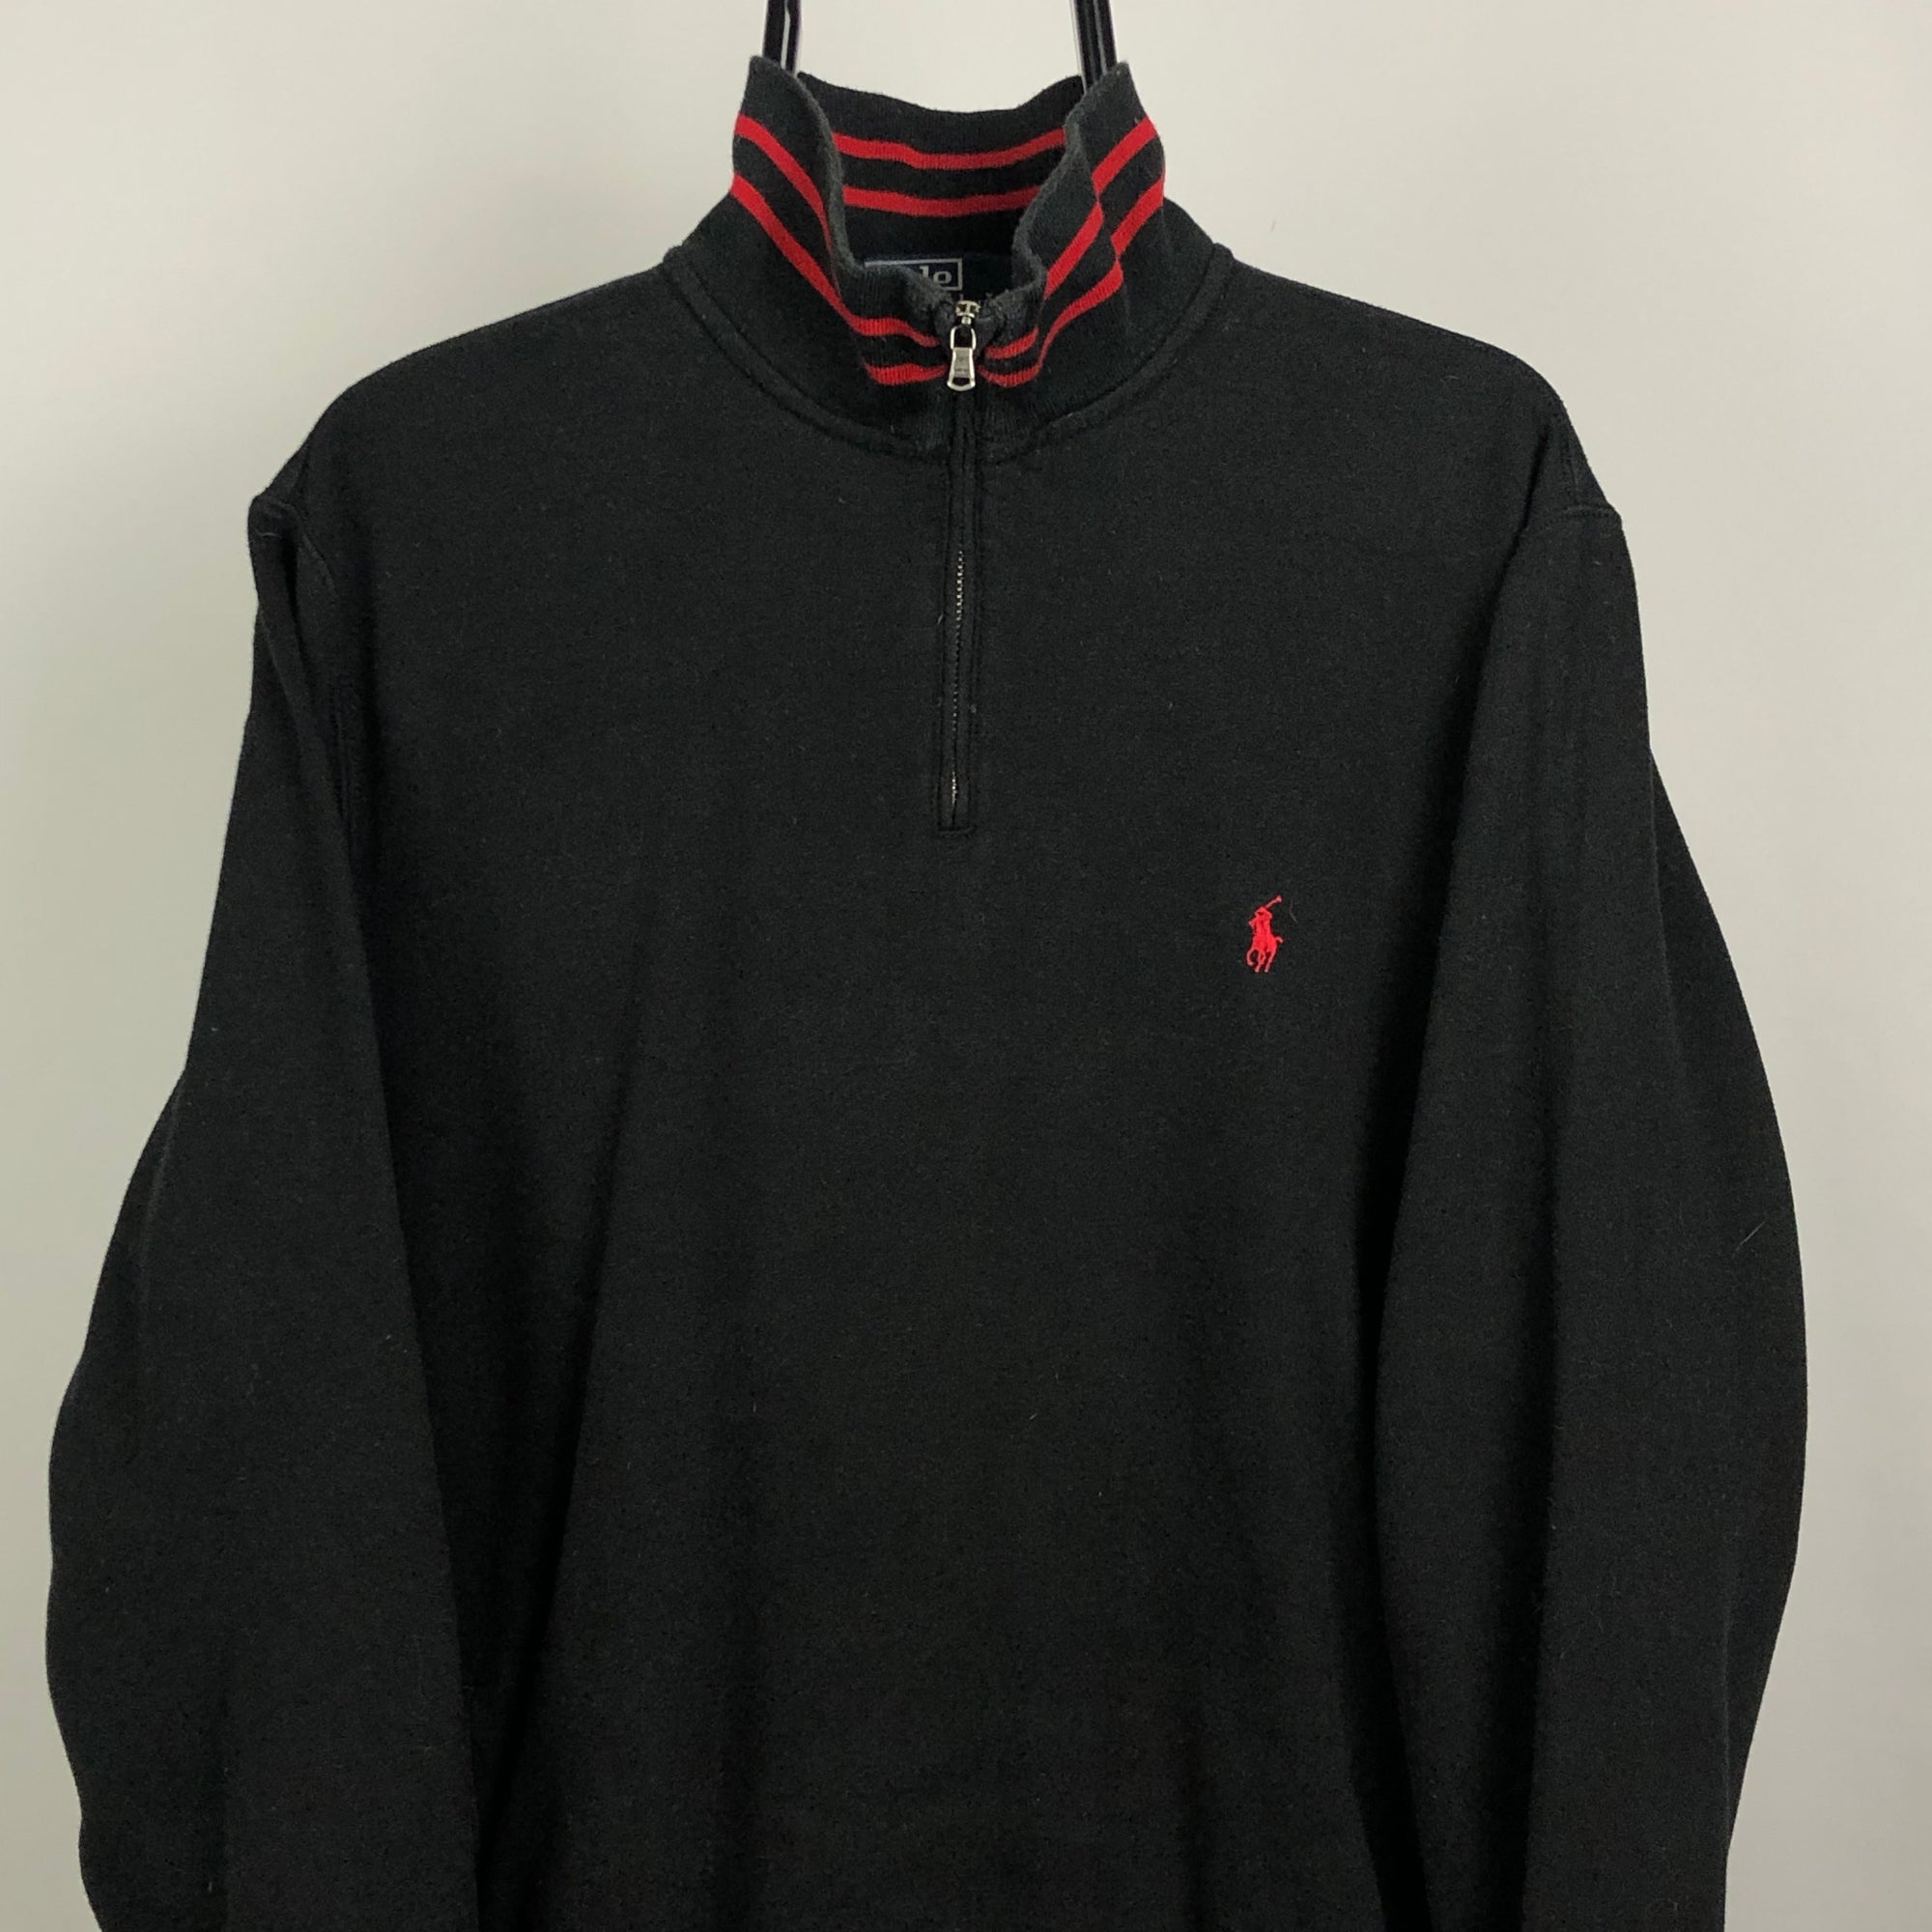 Polo 1/4 Zip Sweatshirt in Black/Red - Men's Medium/Women's Large